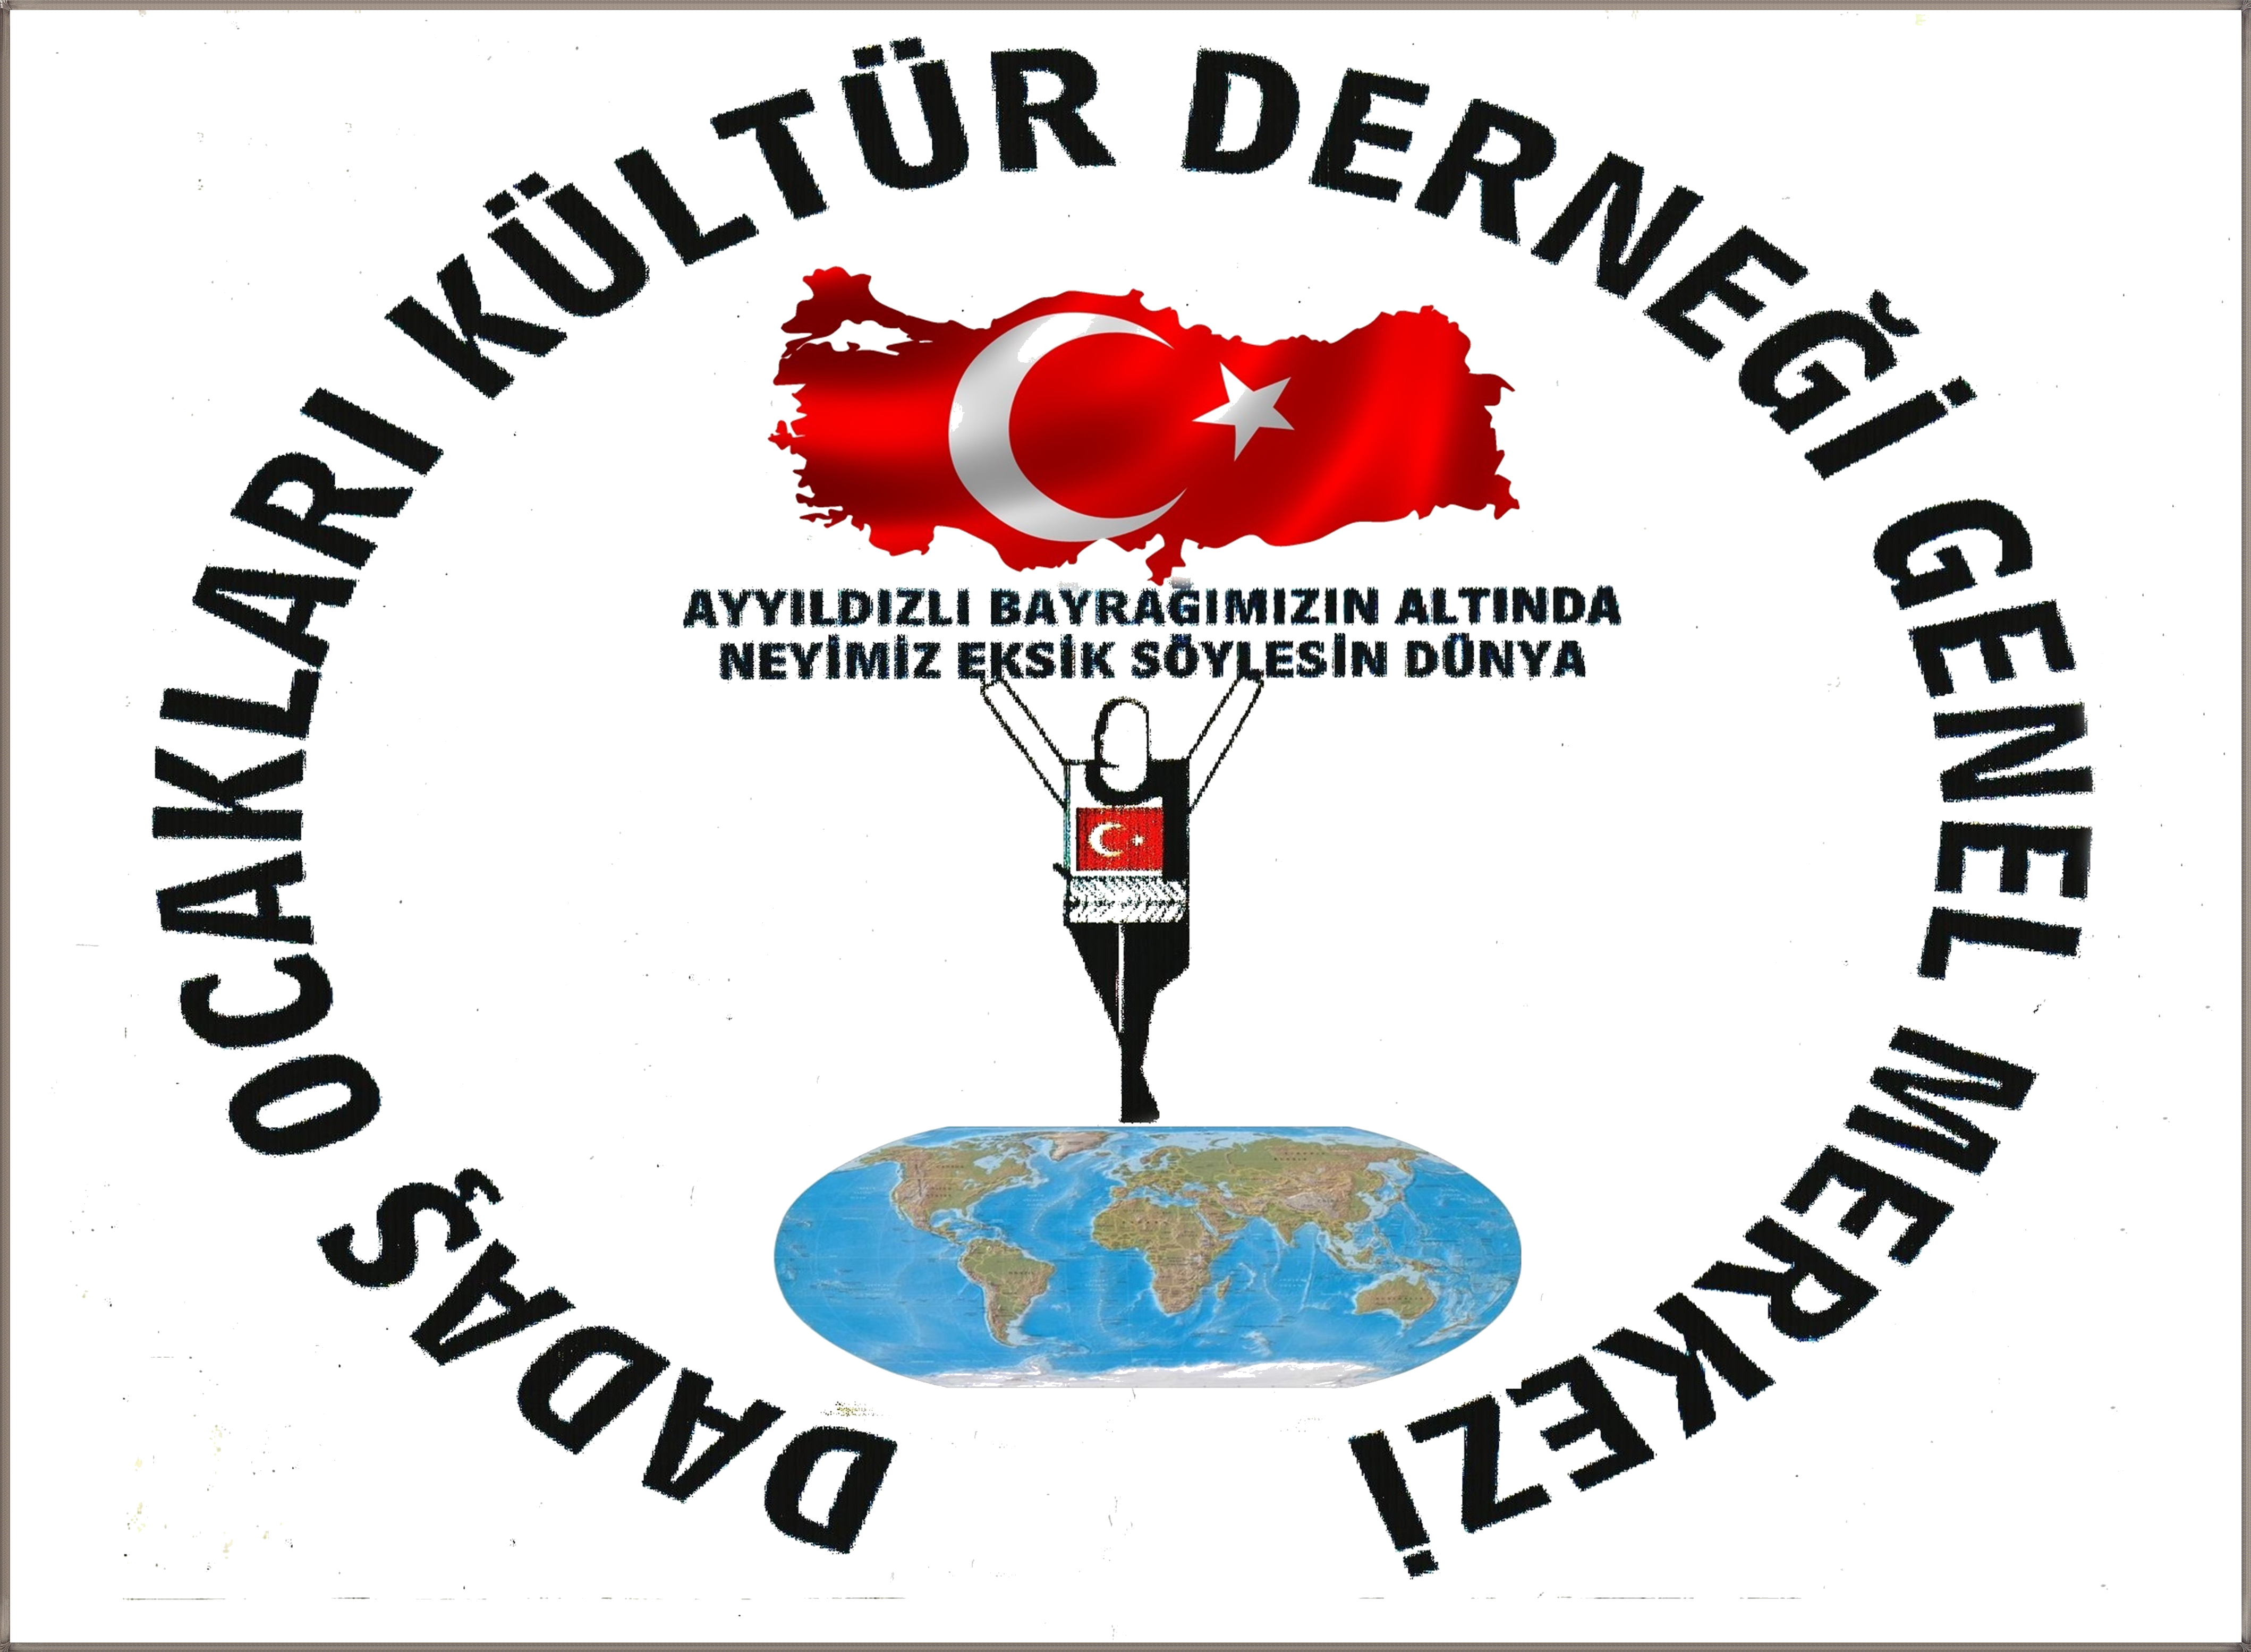 Dadaş Ocaklarından 12 Mart Erzurumun Kurtuluş Mesajı